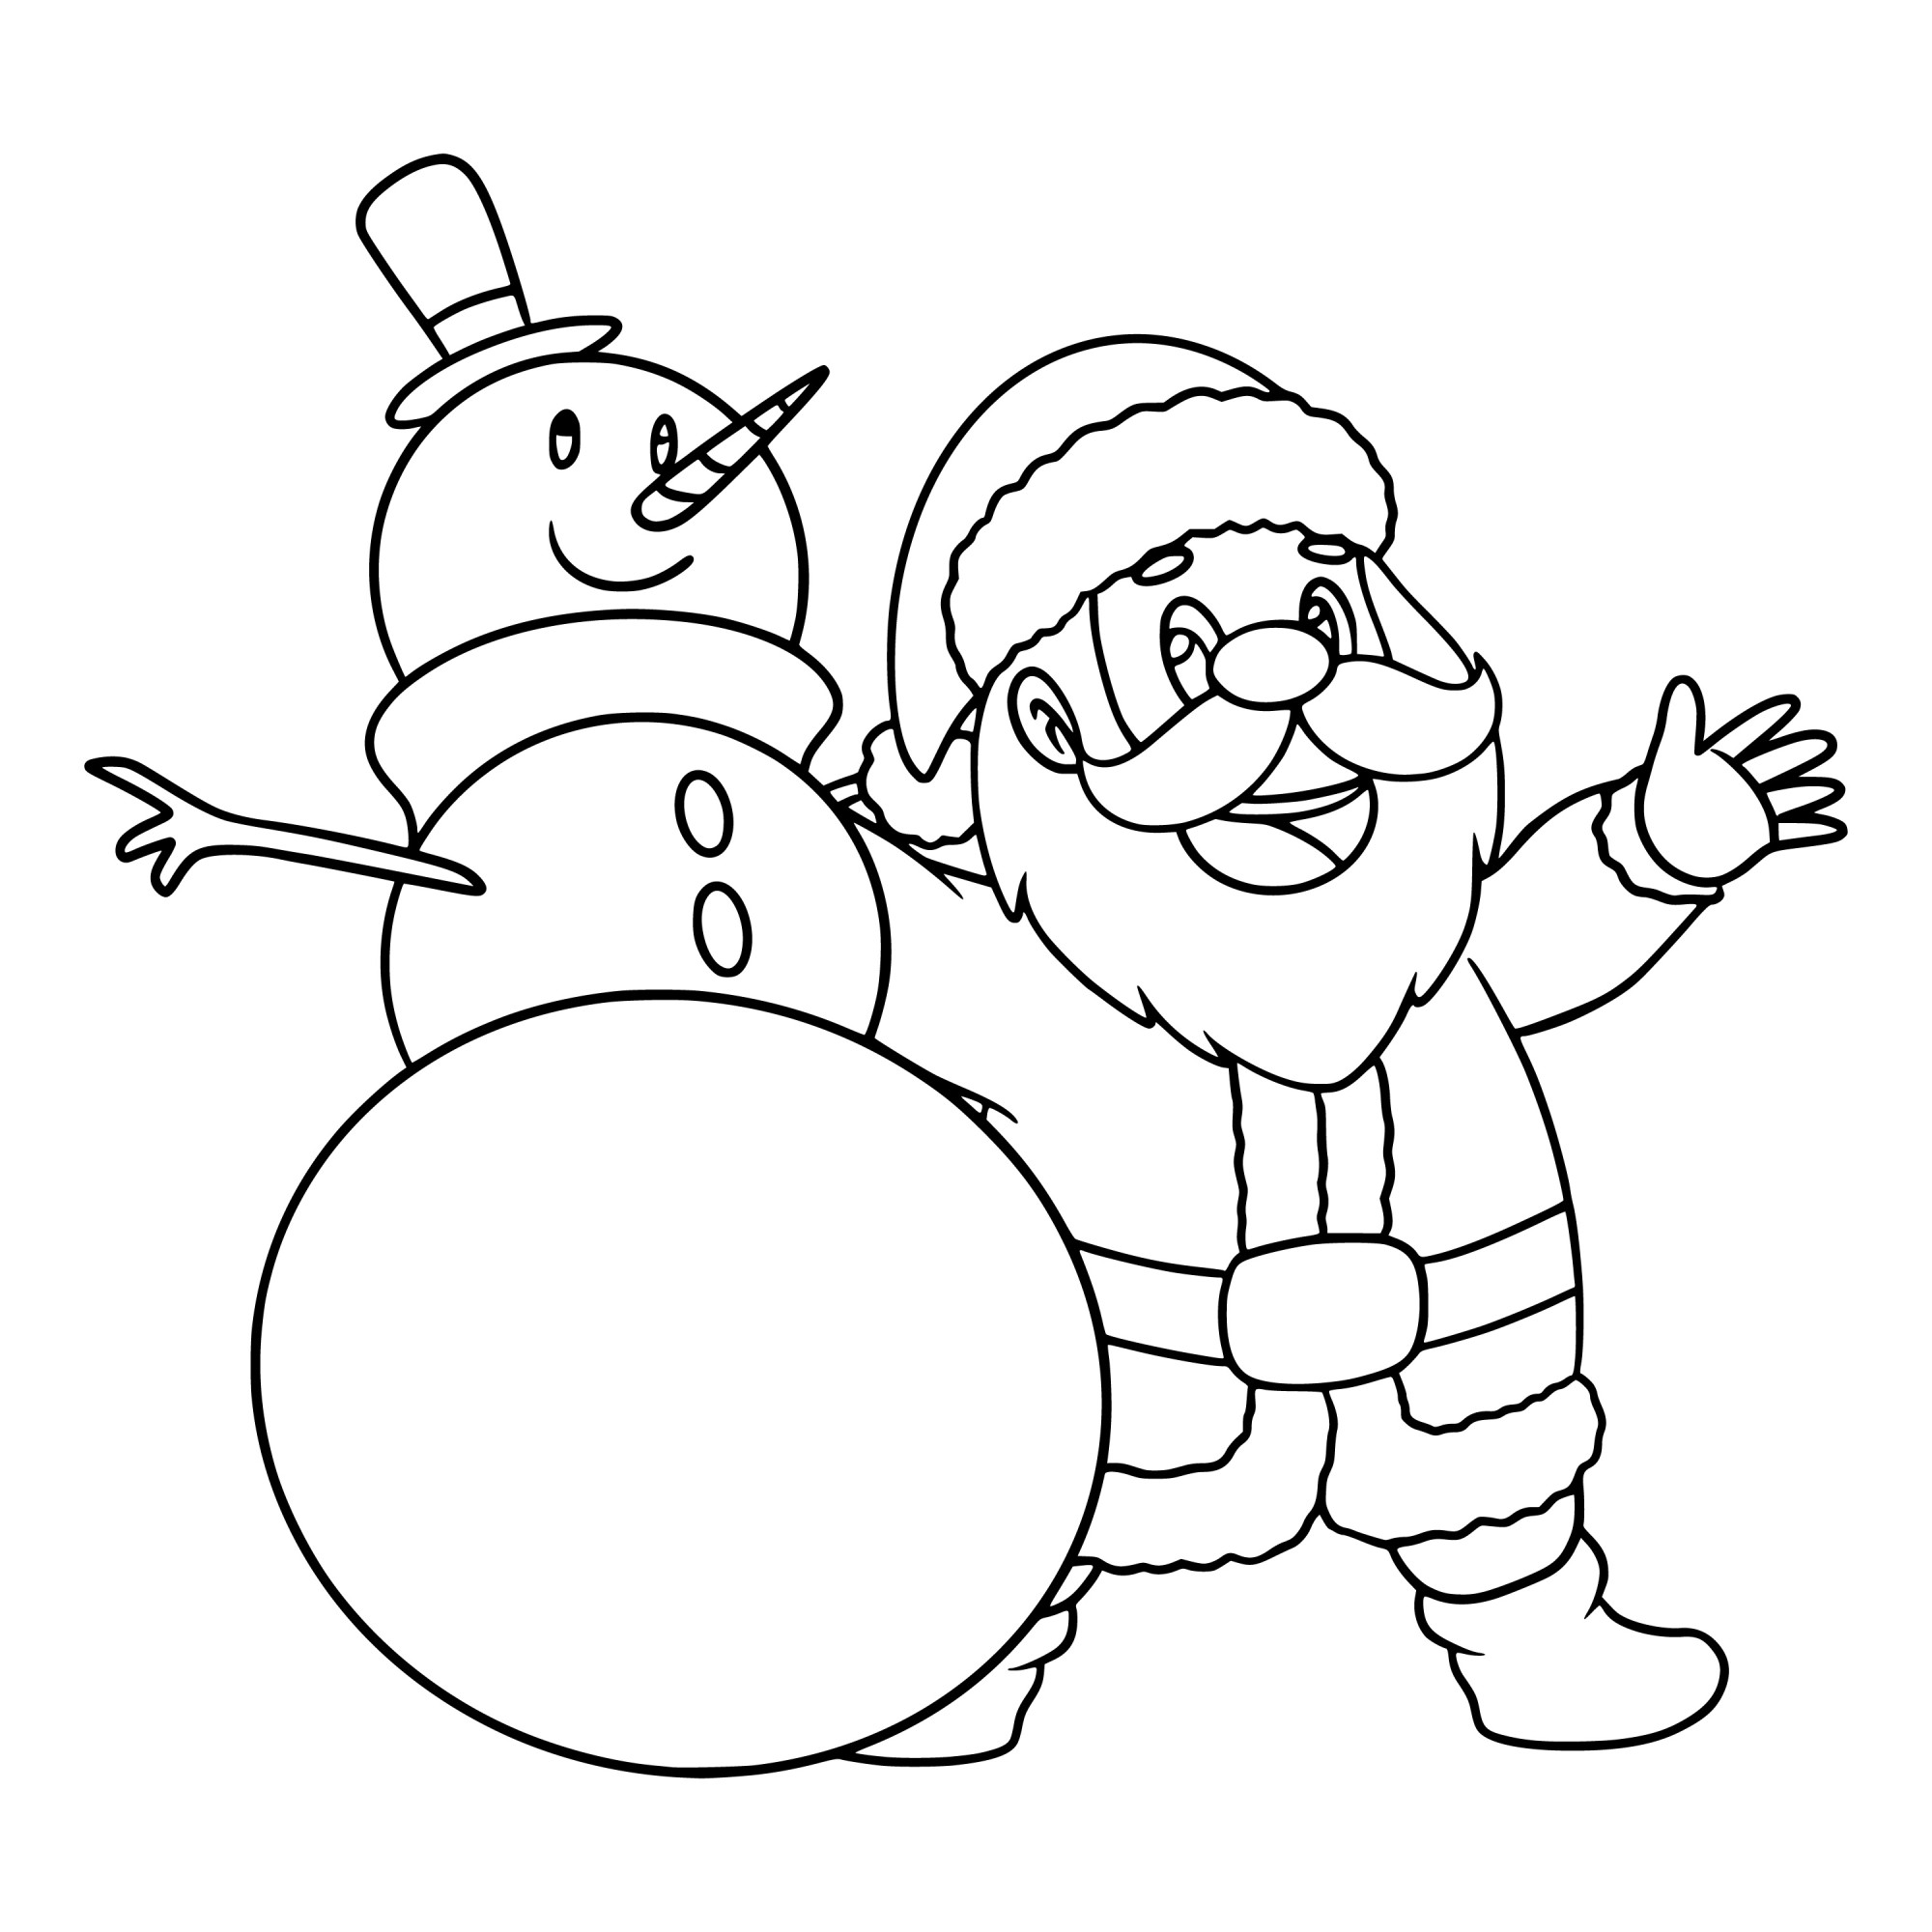 Раскраска для детей: дед мороз и снеговик